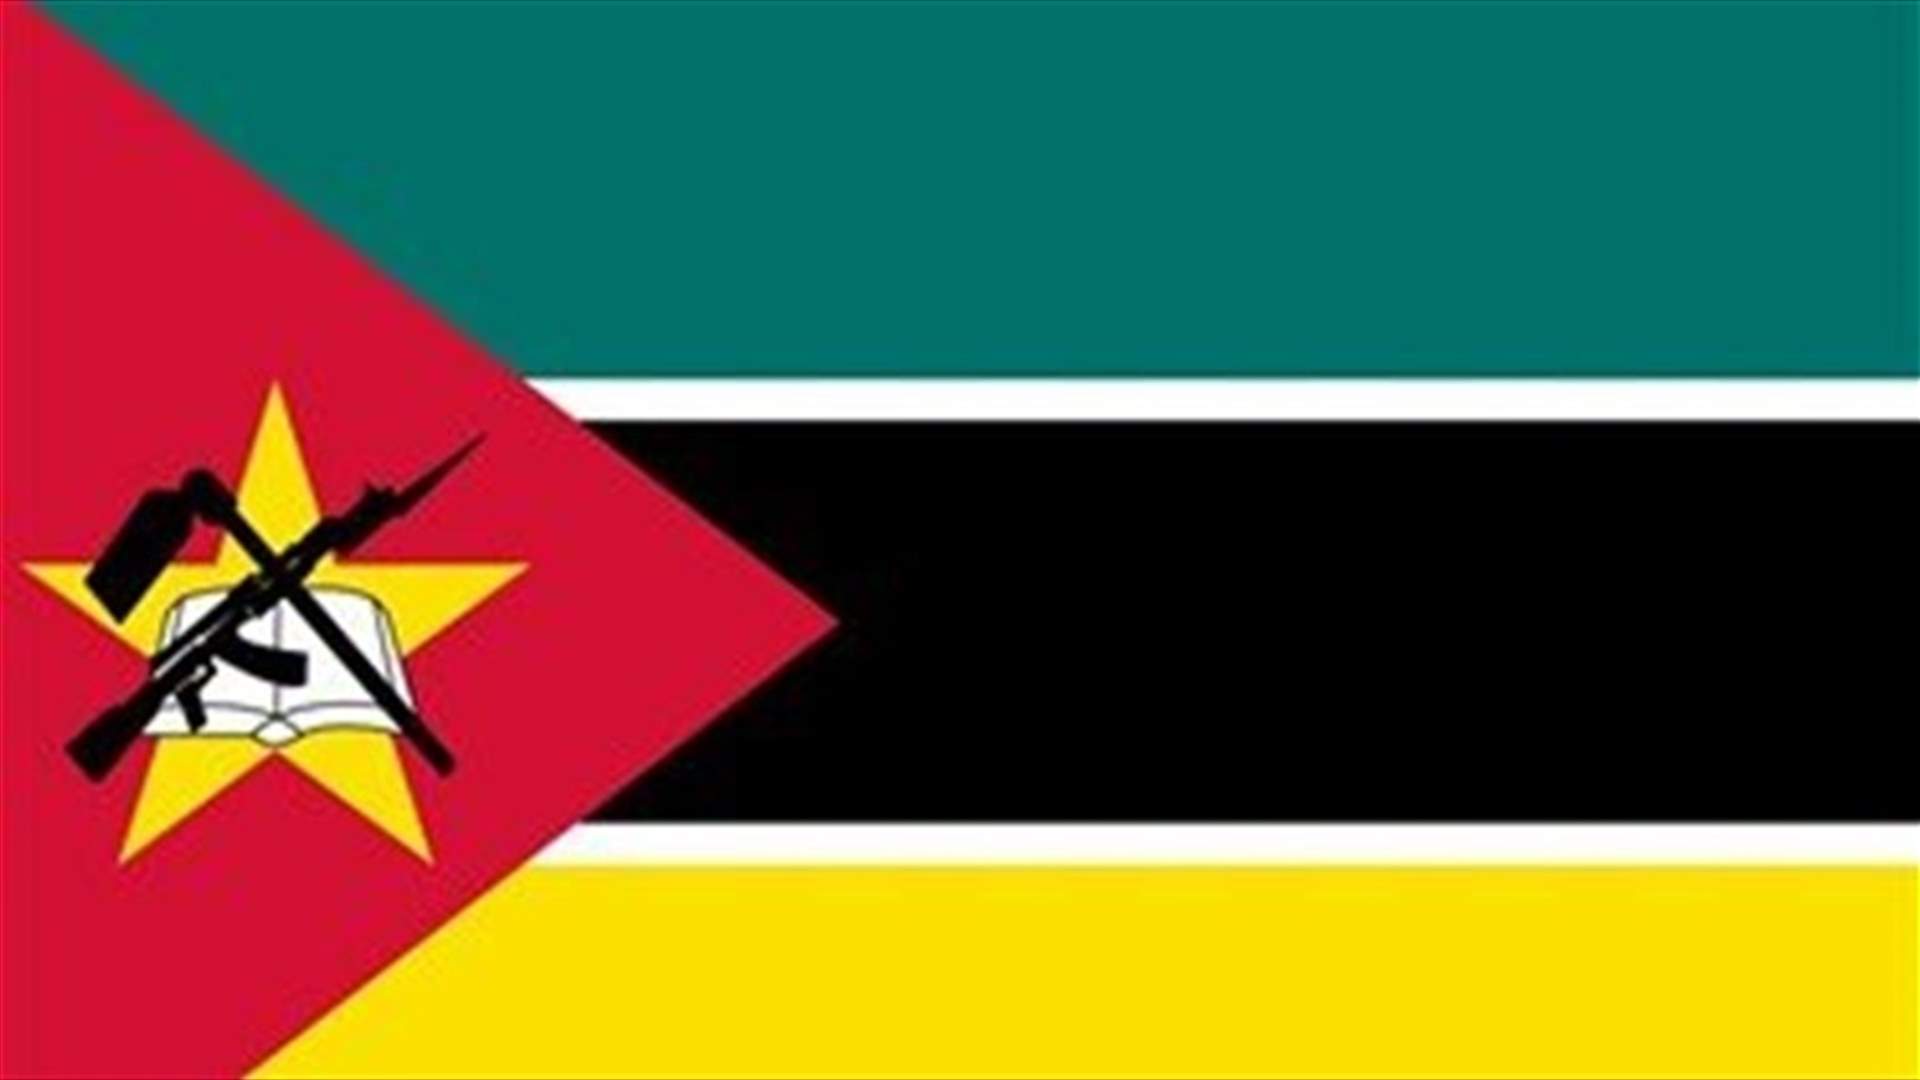 العثور على 12 جثة مقطوعة الرأس بعد هجوم في موزمبيق